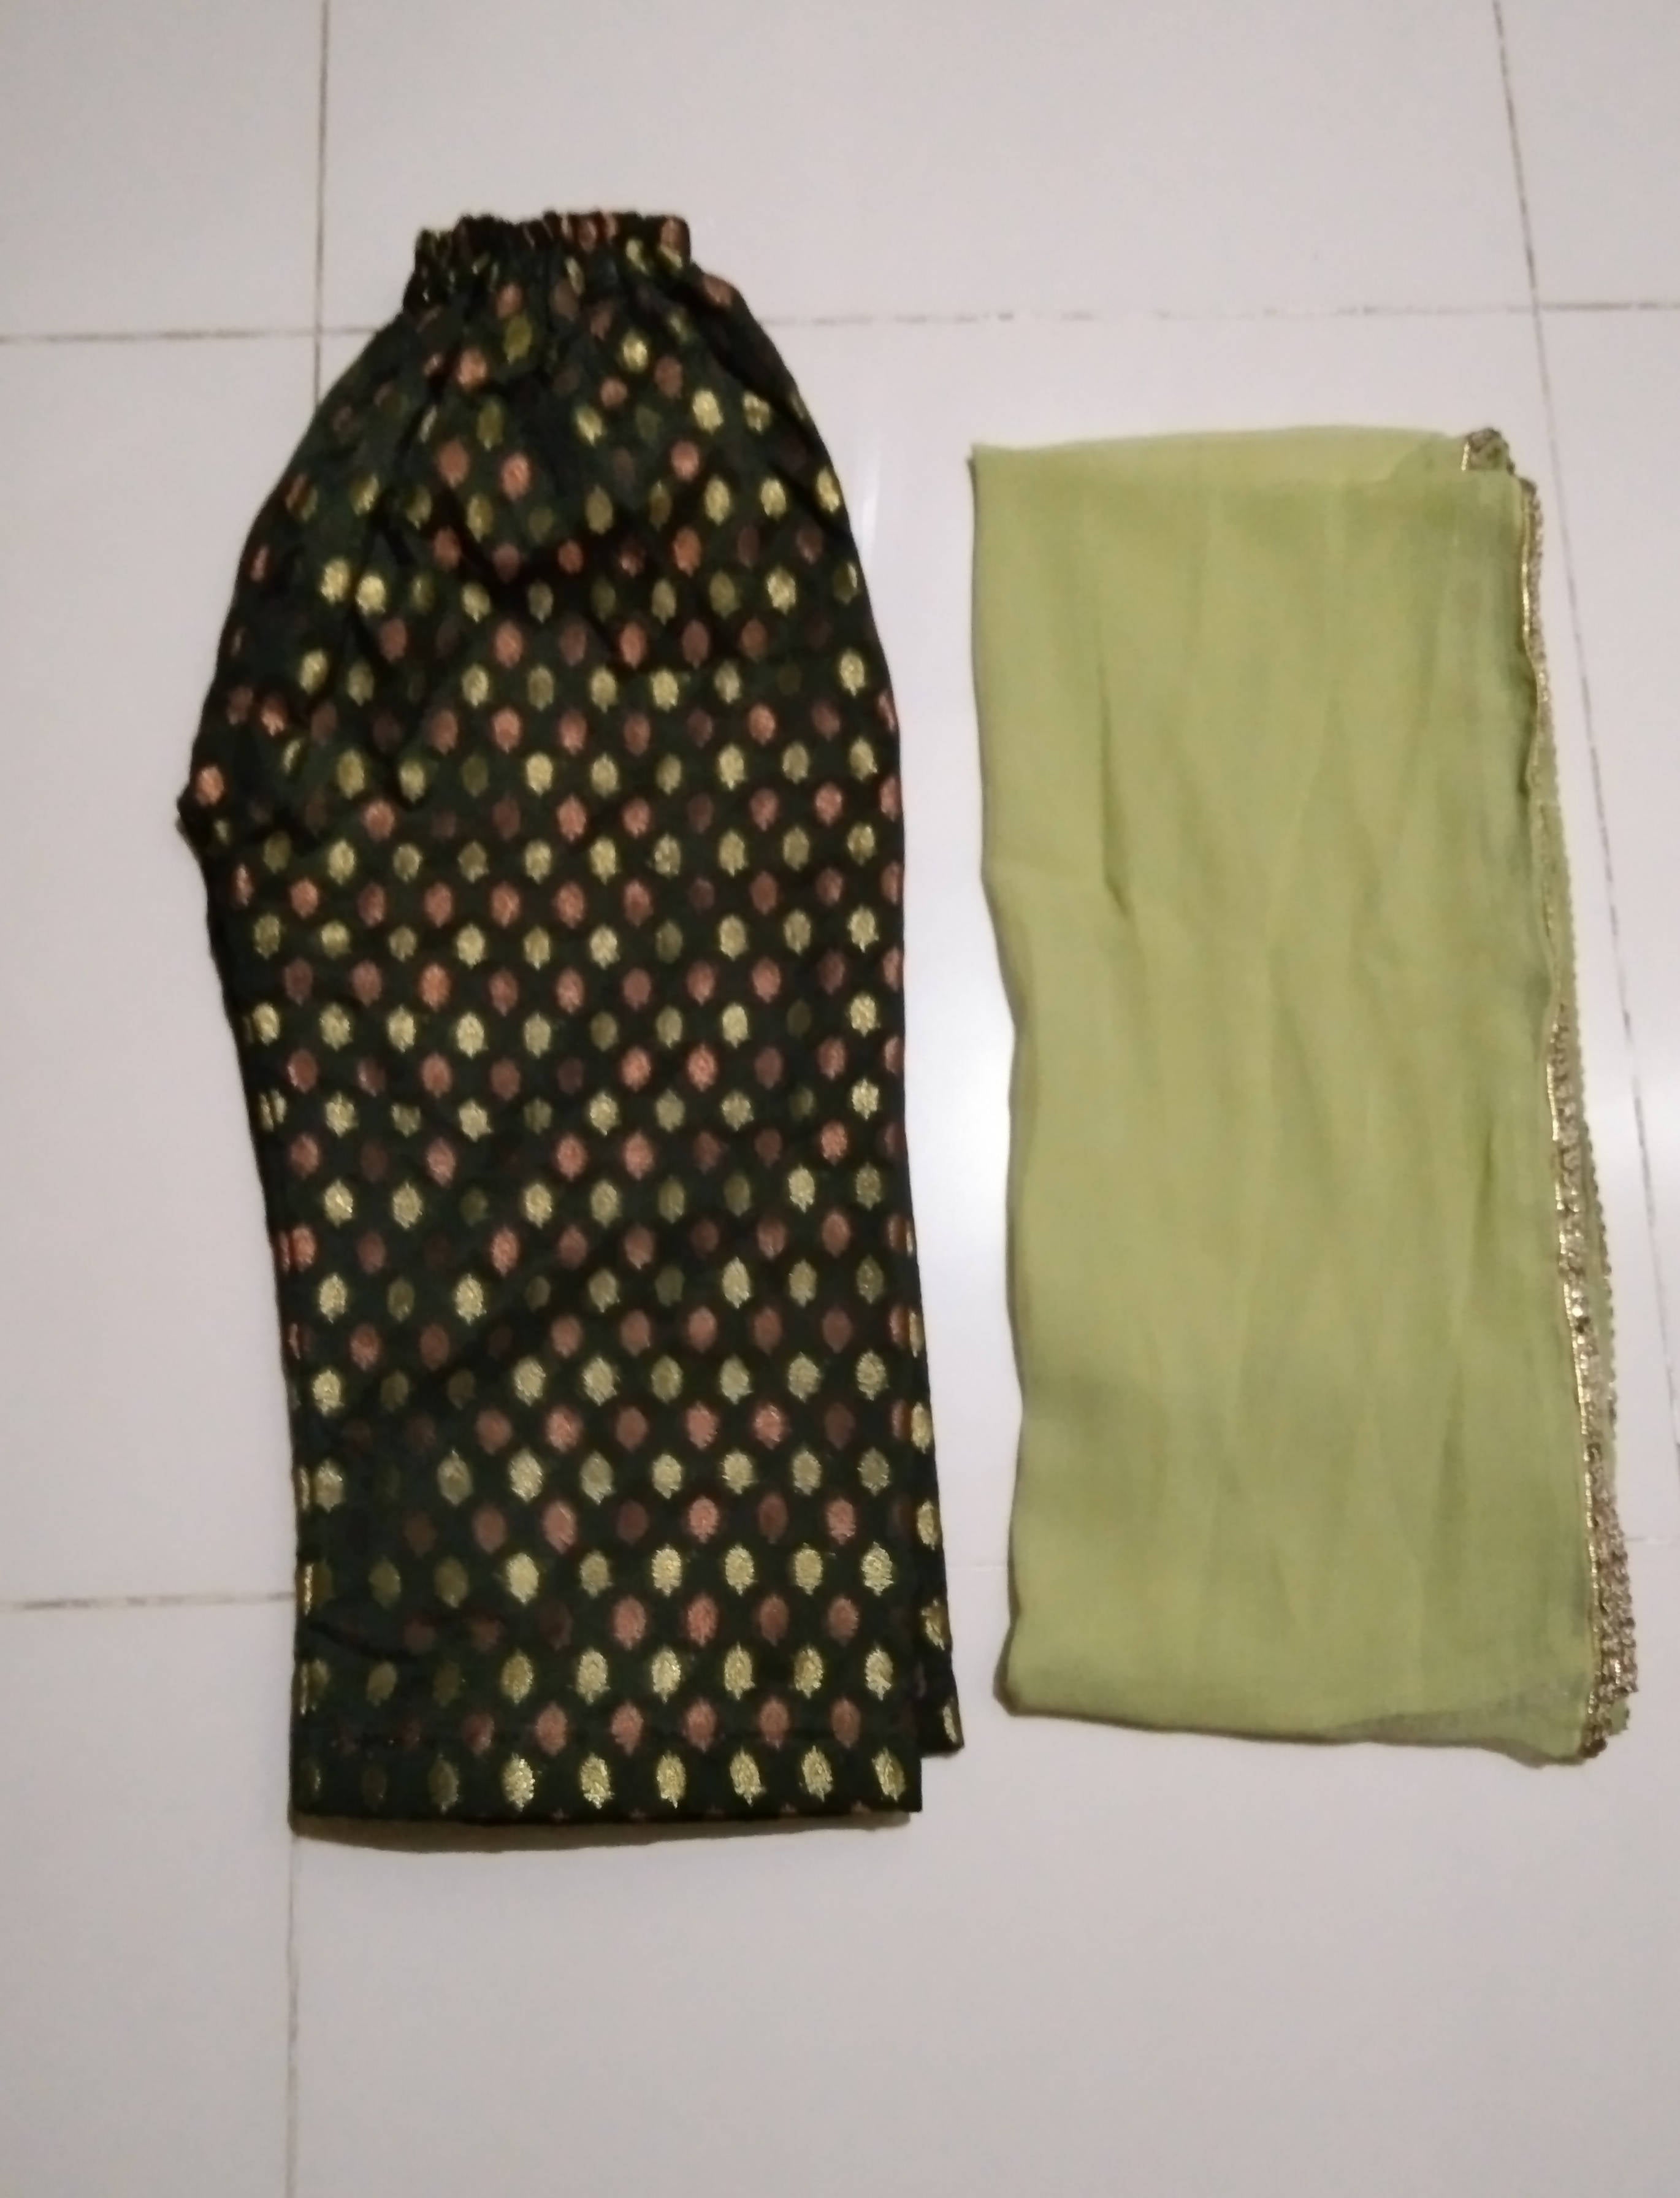 Apple pie green angharkha trouser dupatta | Girls Shalwar Kameez | Worn Once